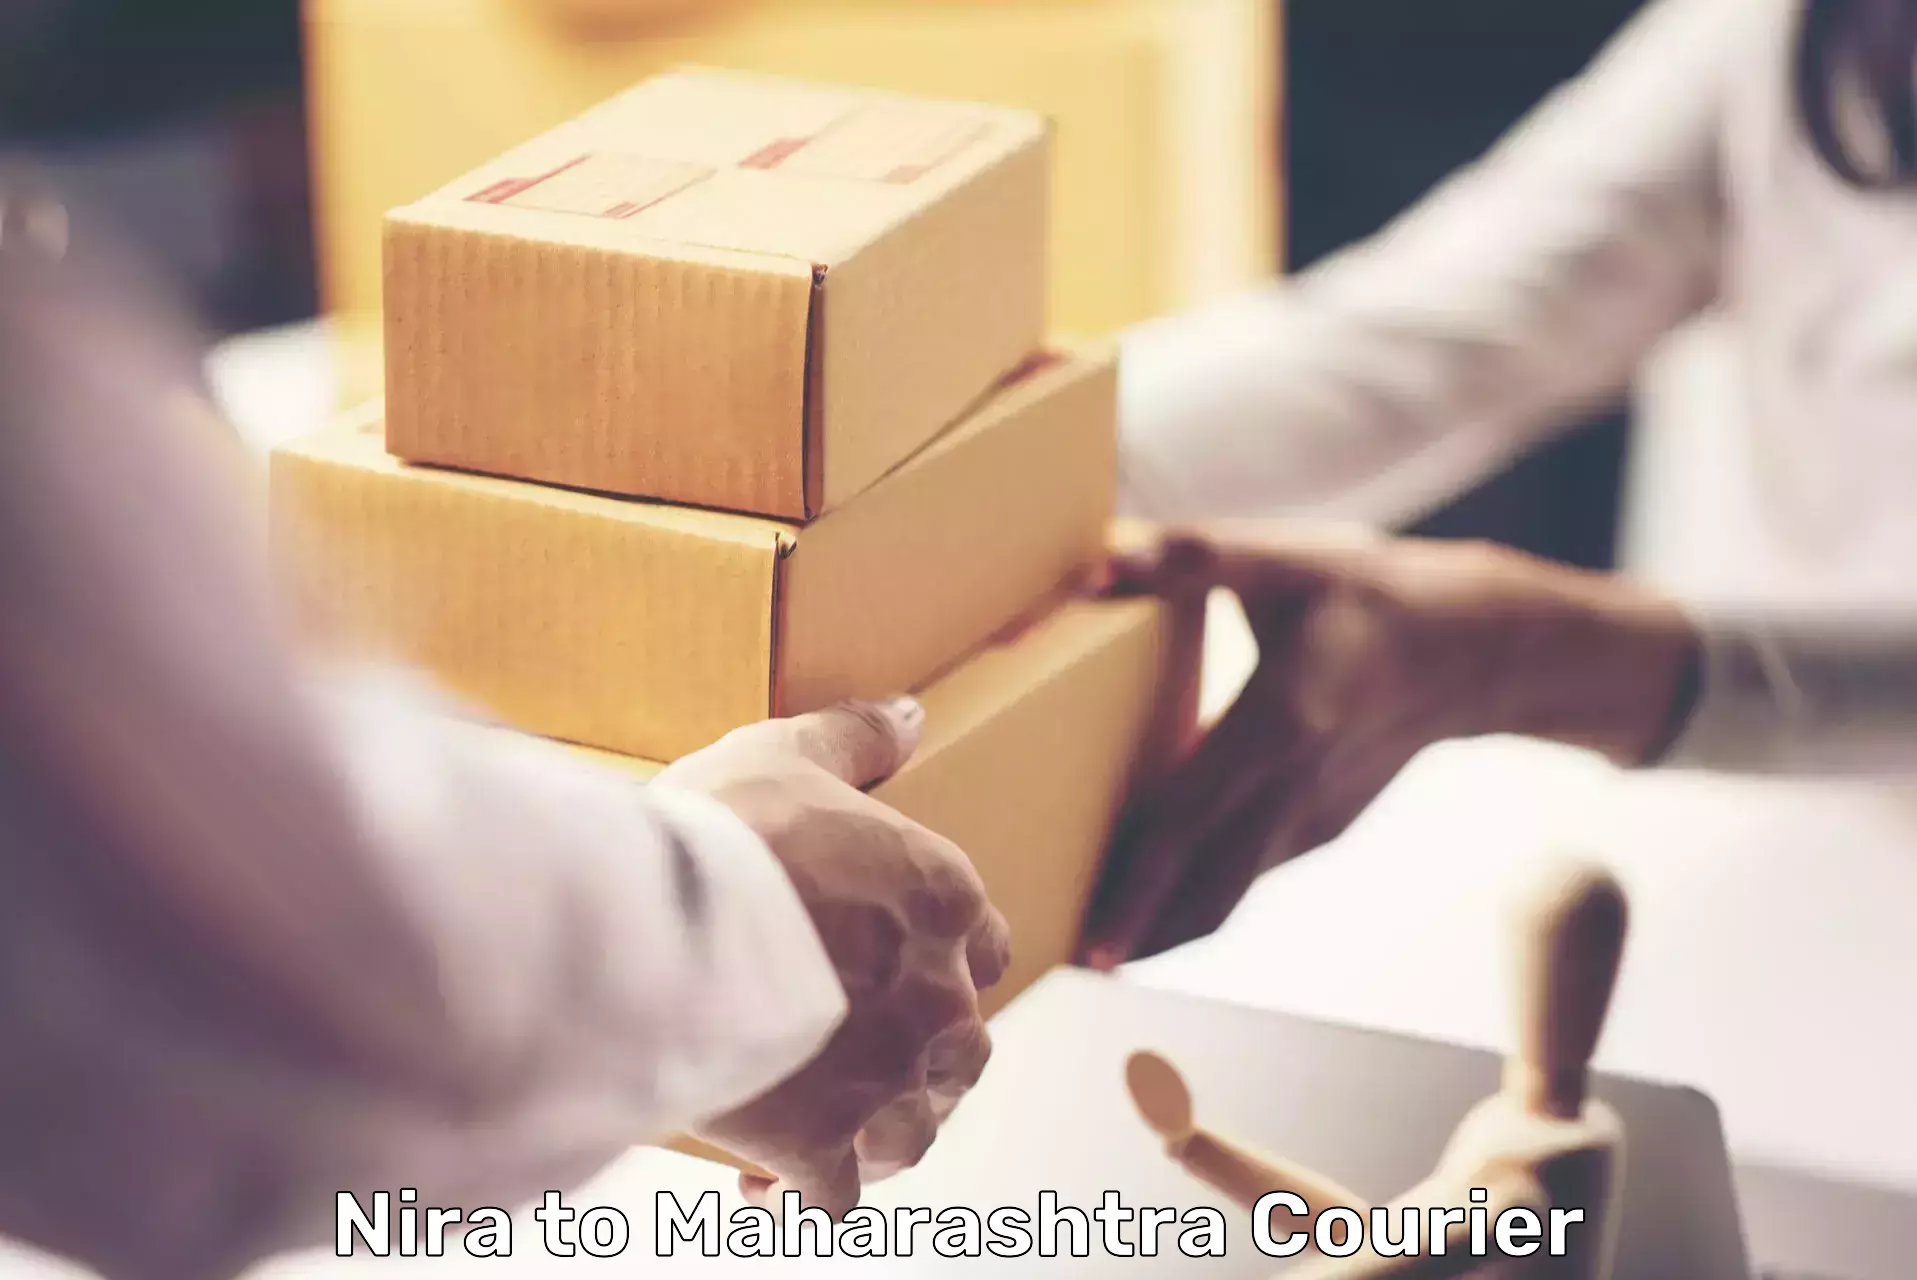 E-commerce fulfillment Nira to Maharashtra